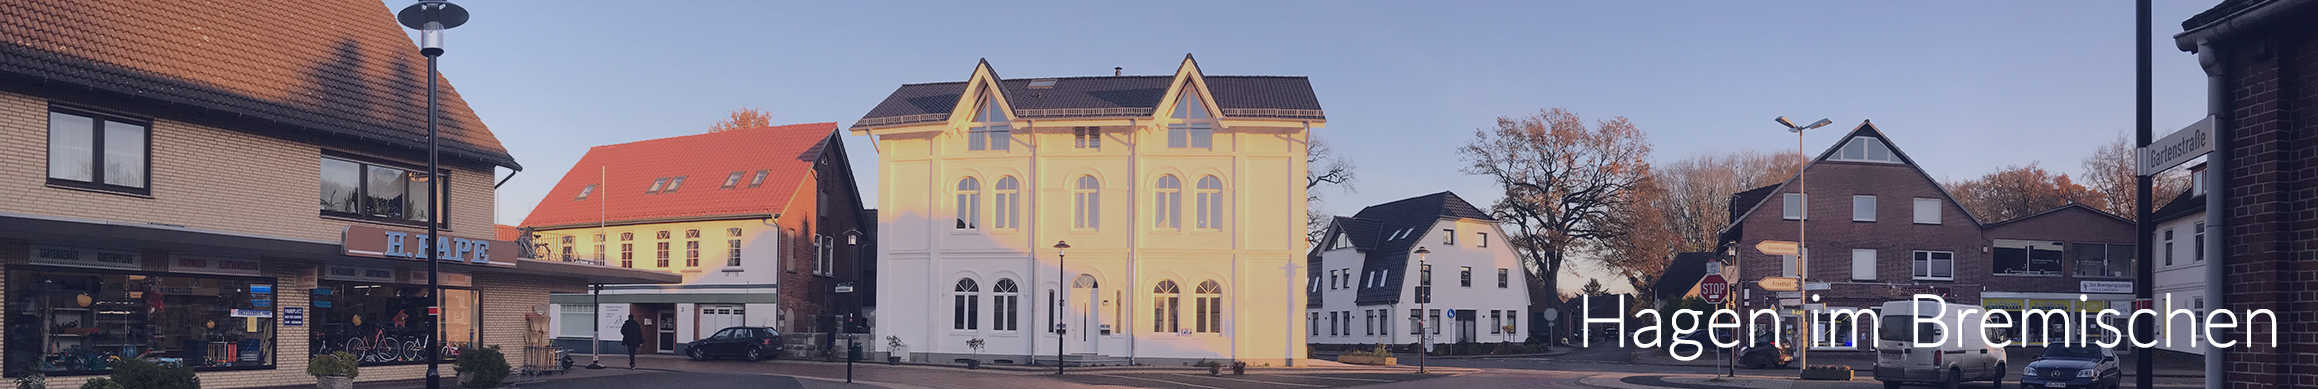 Hagen-Immobilien